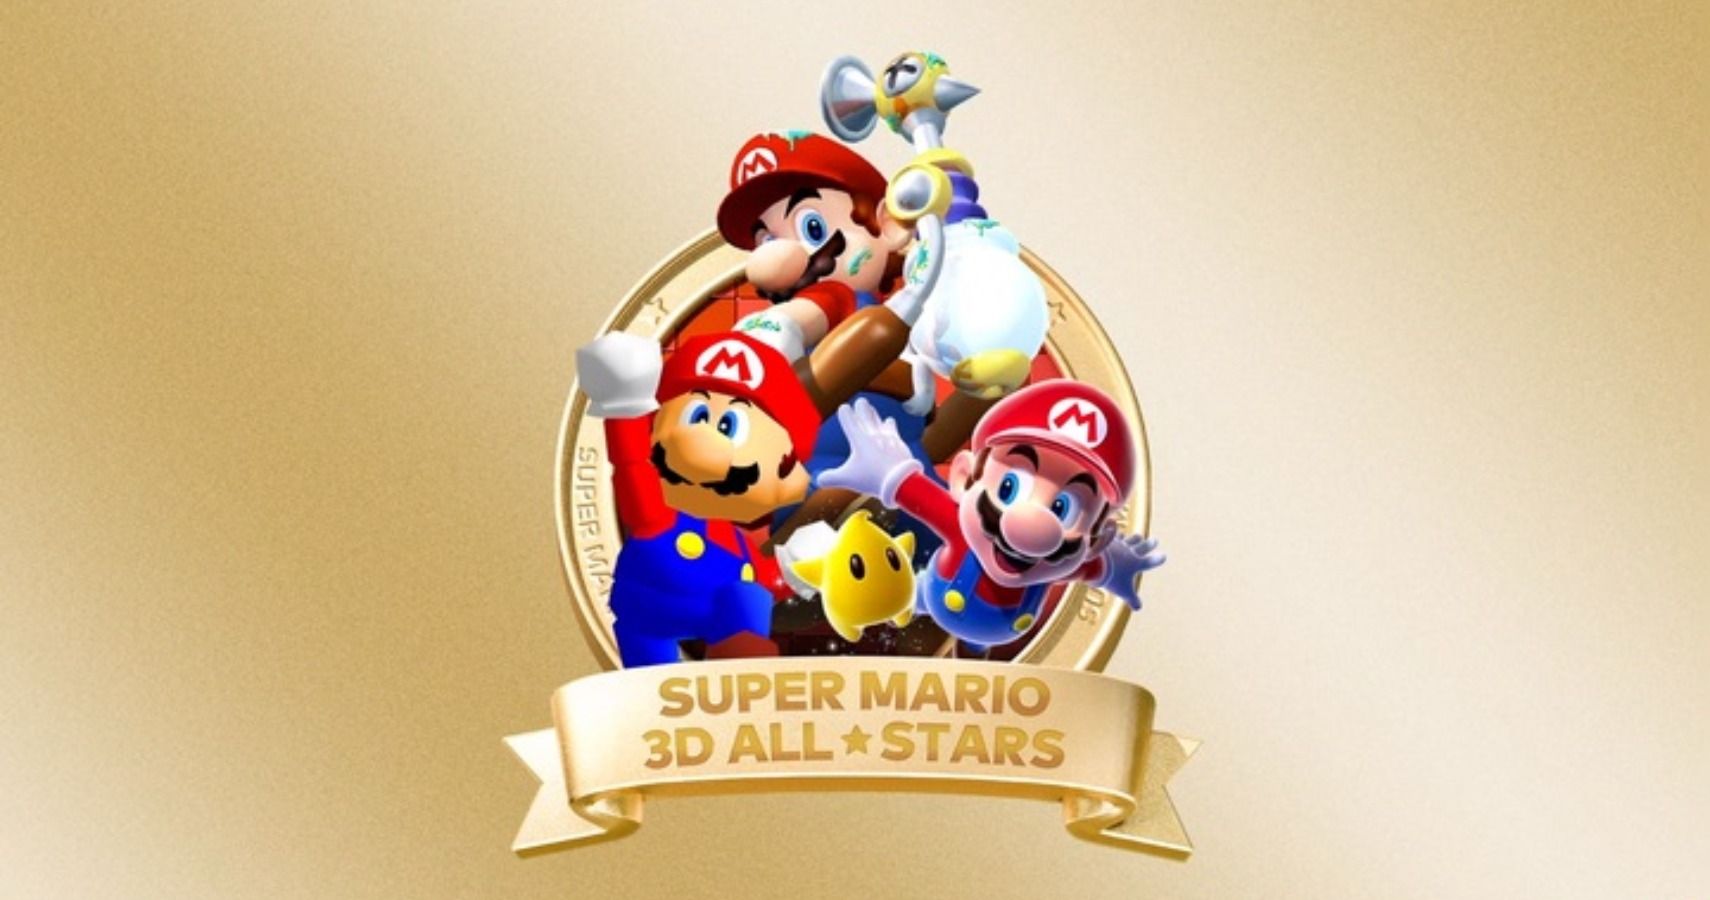 Super Mario 3D All-Stars Cover